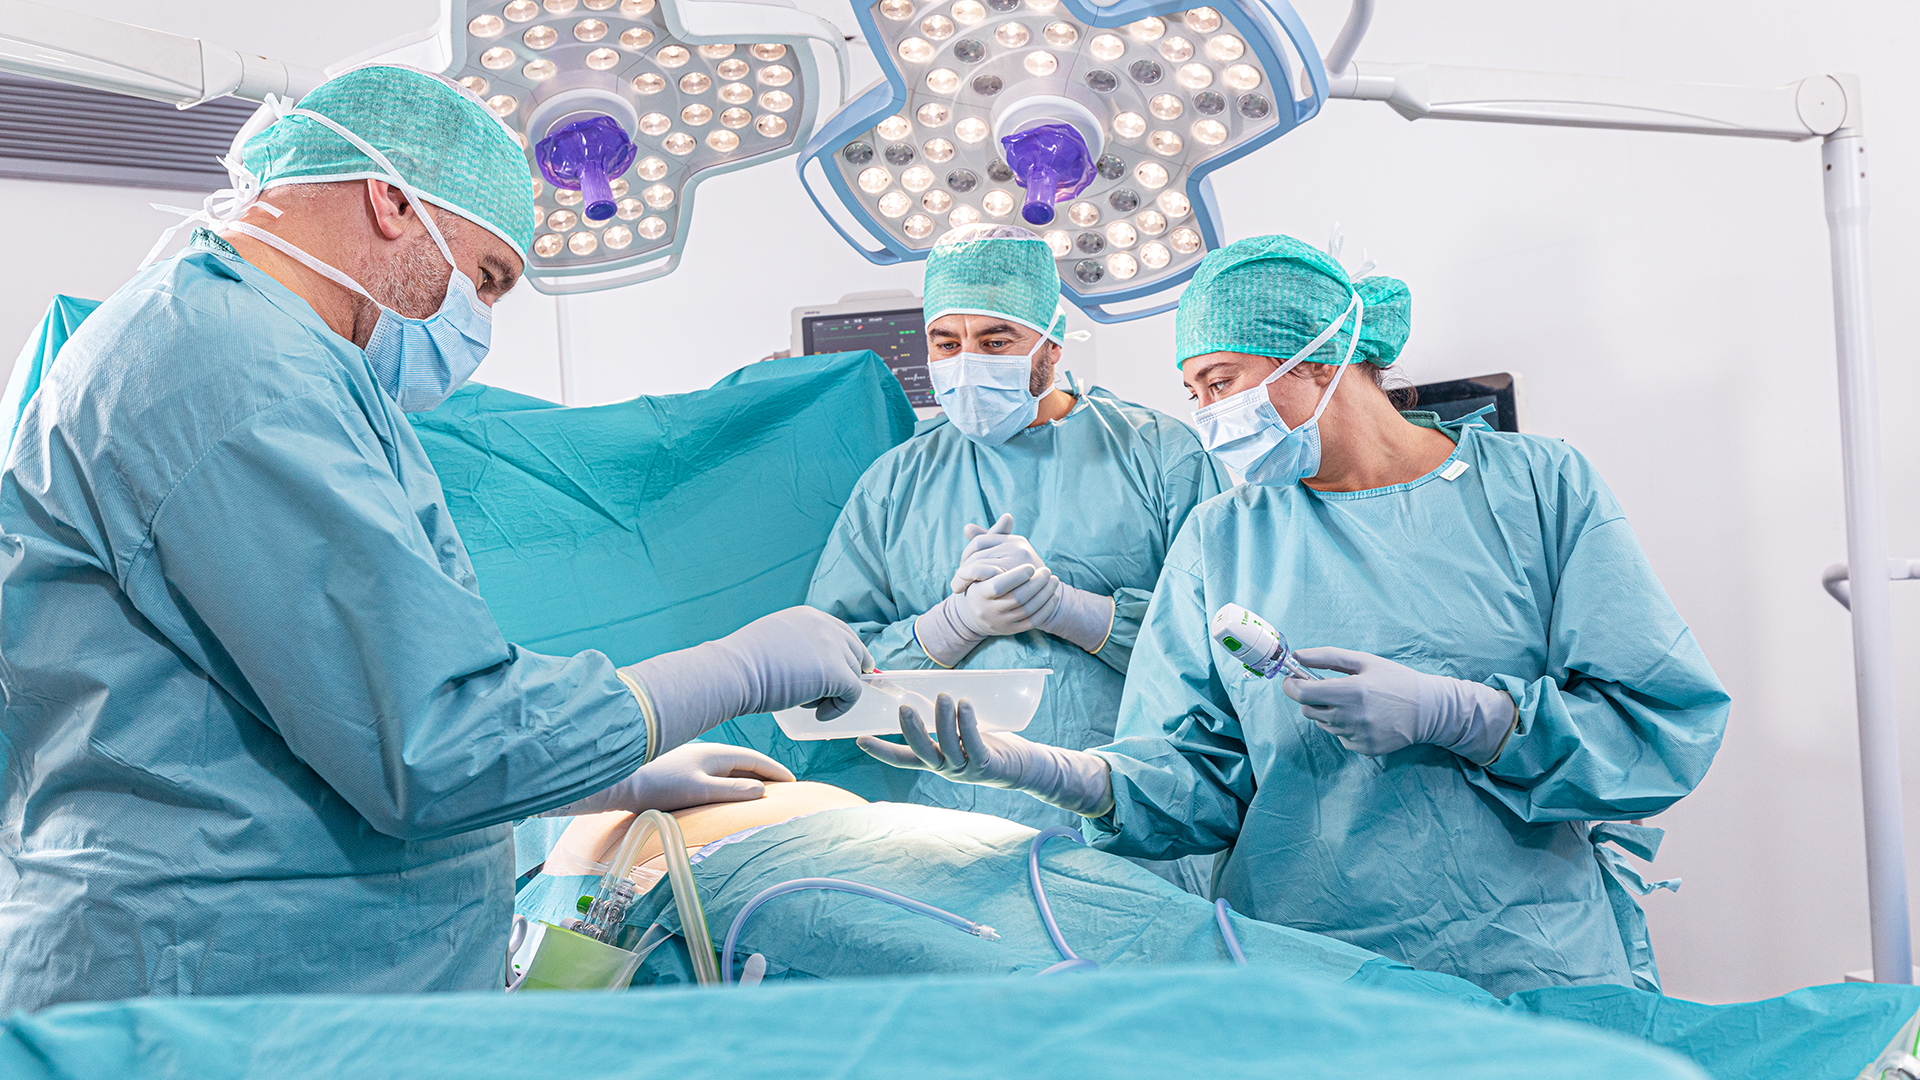 Un chirurgien prend un instrument chirurgical sur un plateau pendant une intervention